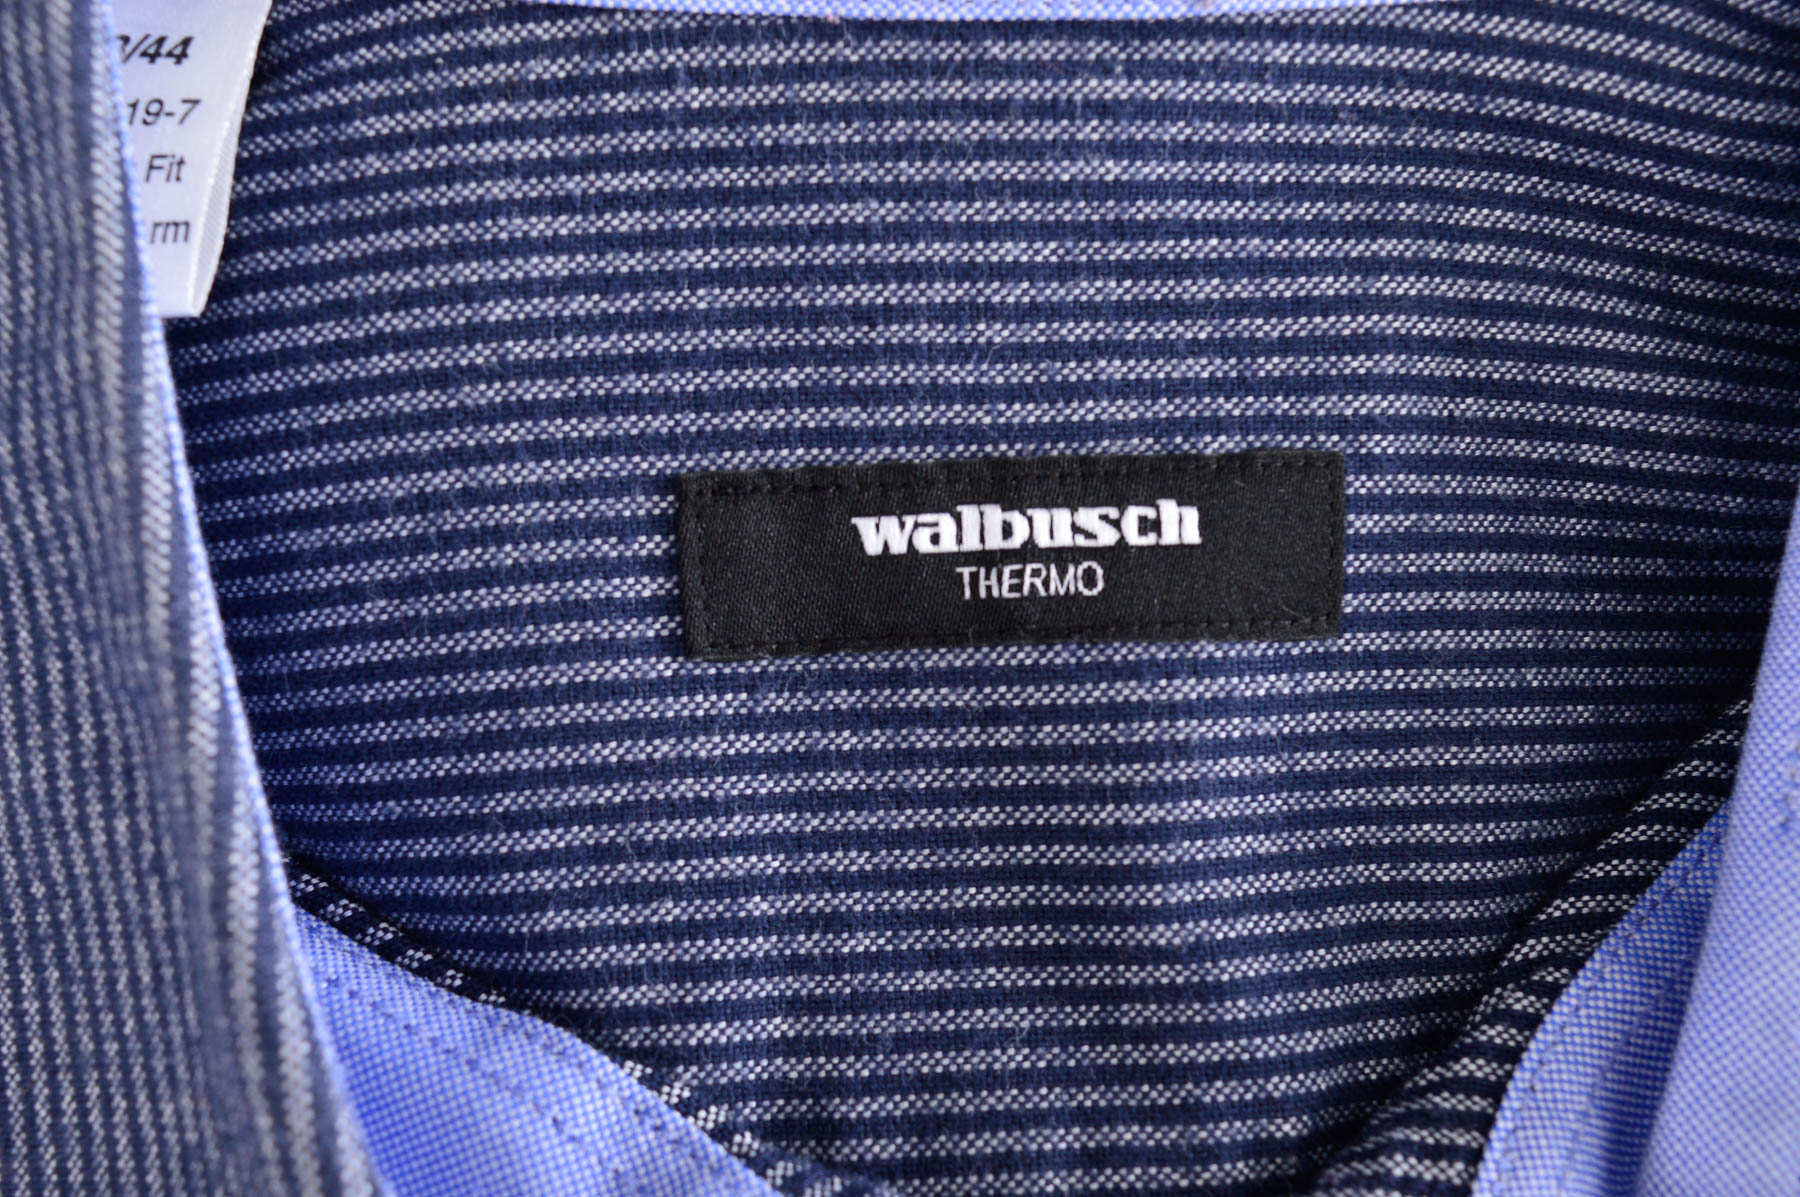 Men's shirt - Walbusch - 2